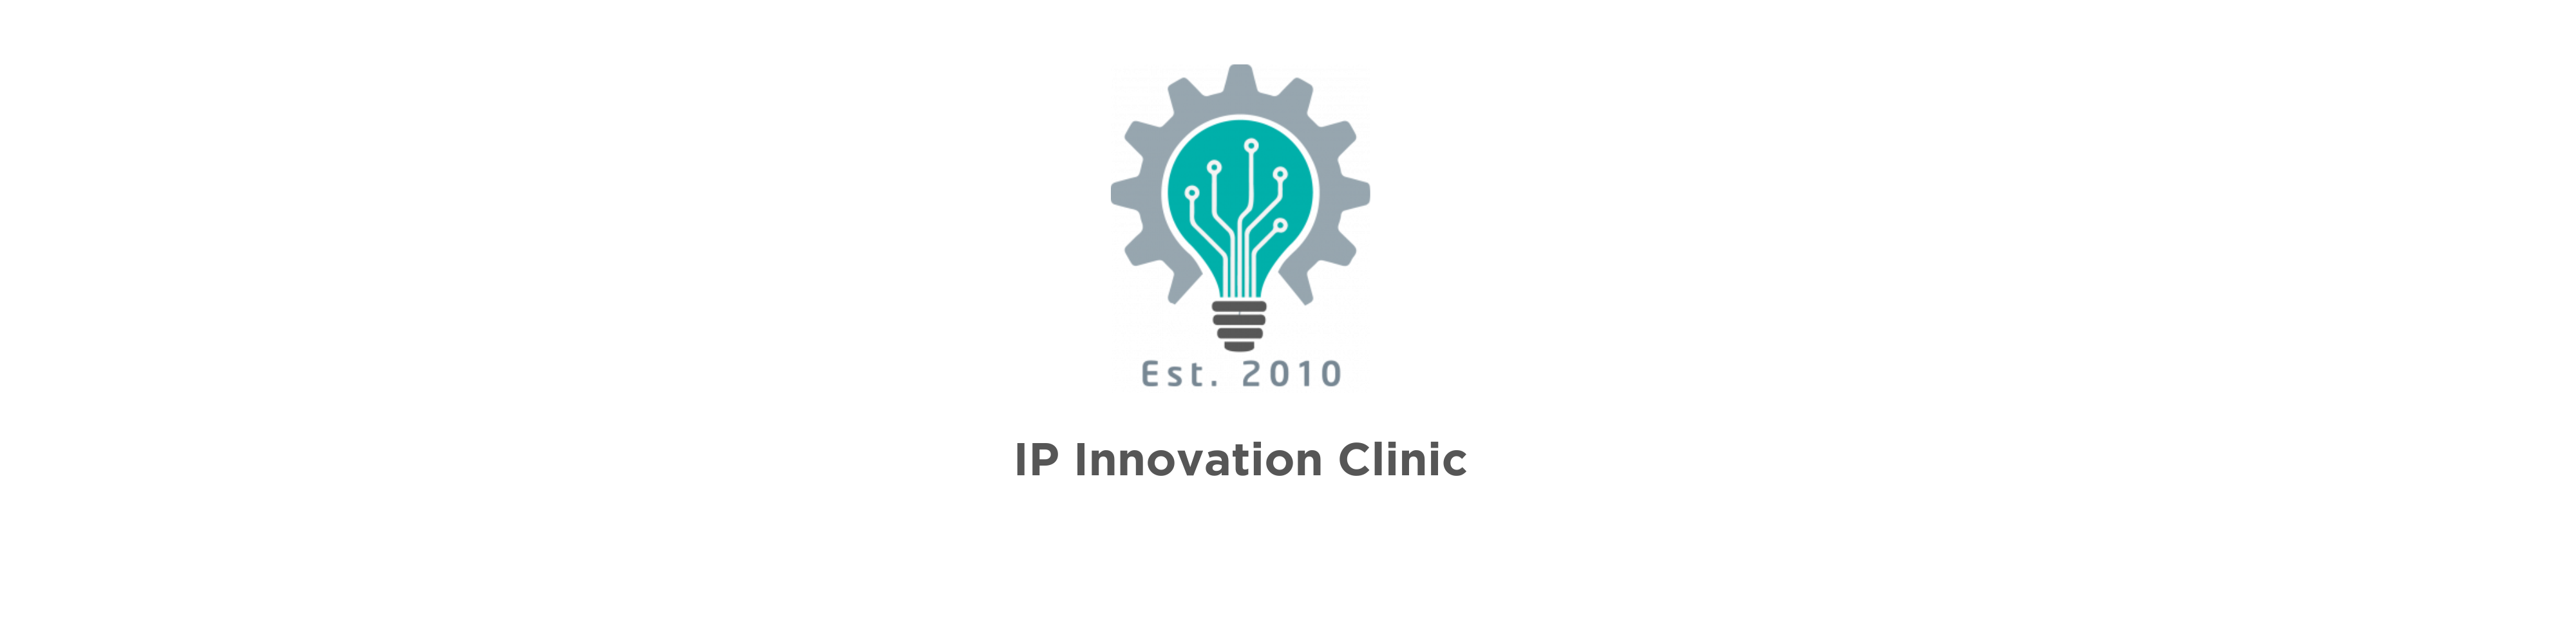 IP Innovation Clinic logo